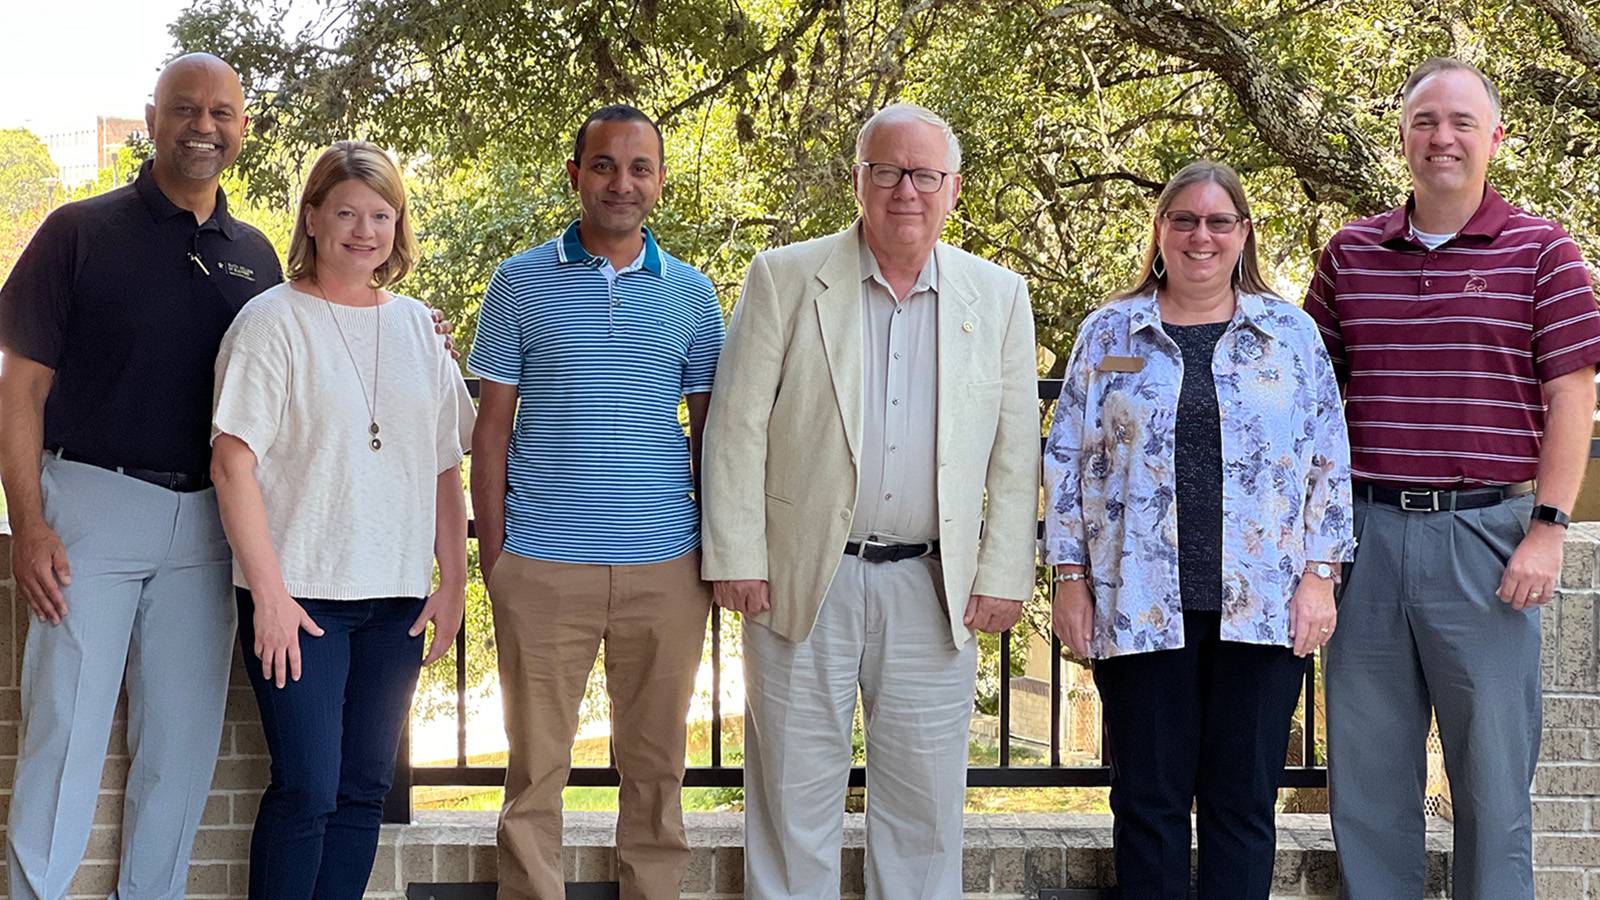 Six faculty members posing outdoors.